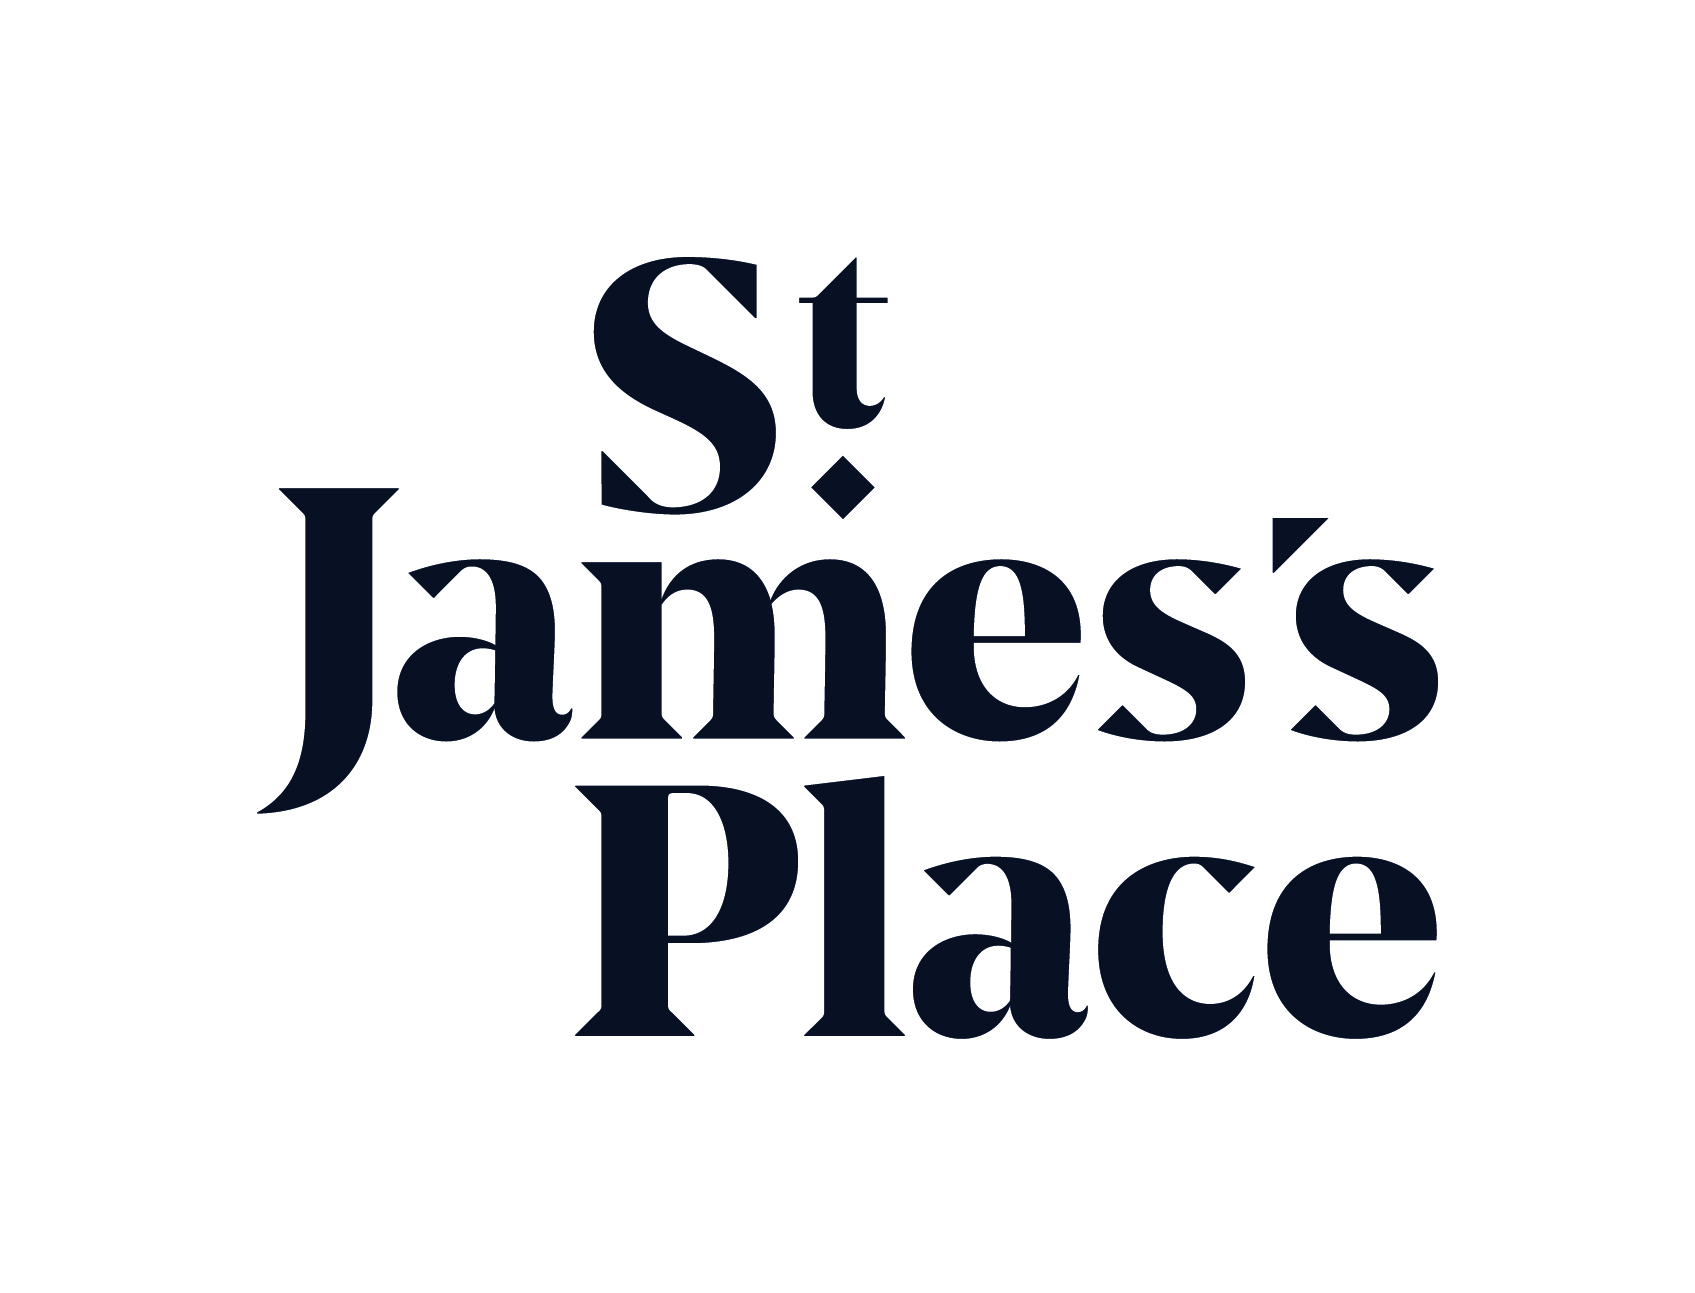 About official tournament title sponsor St. James's Place